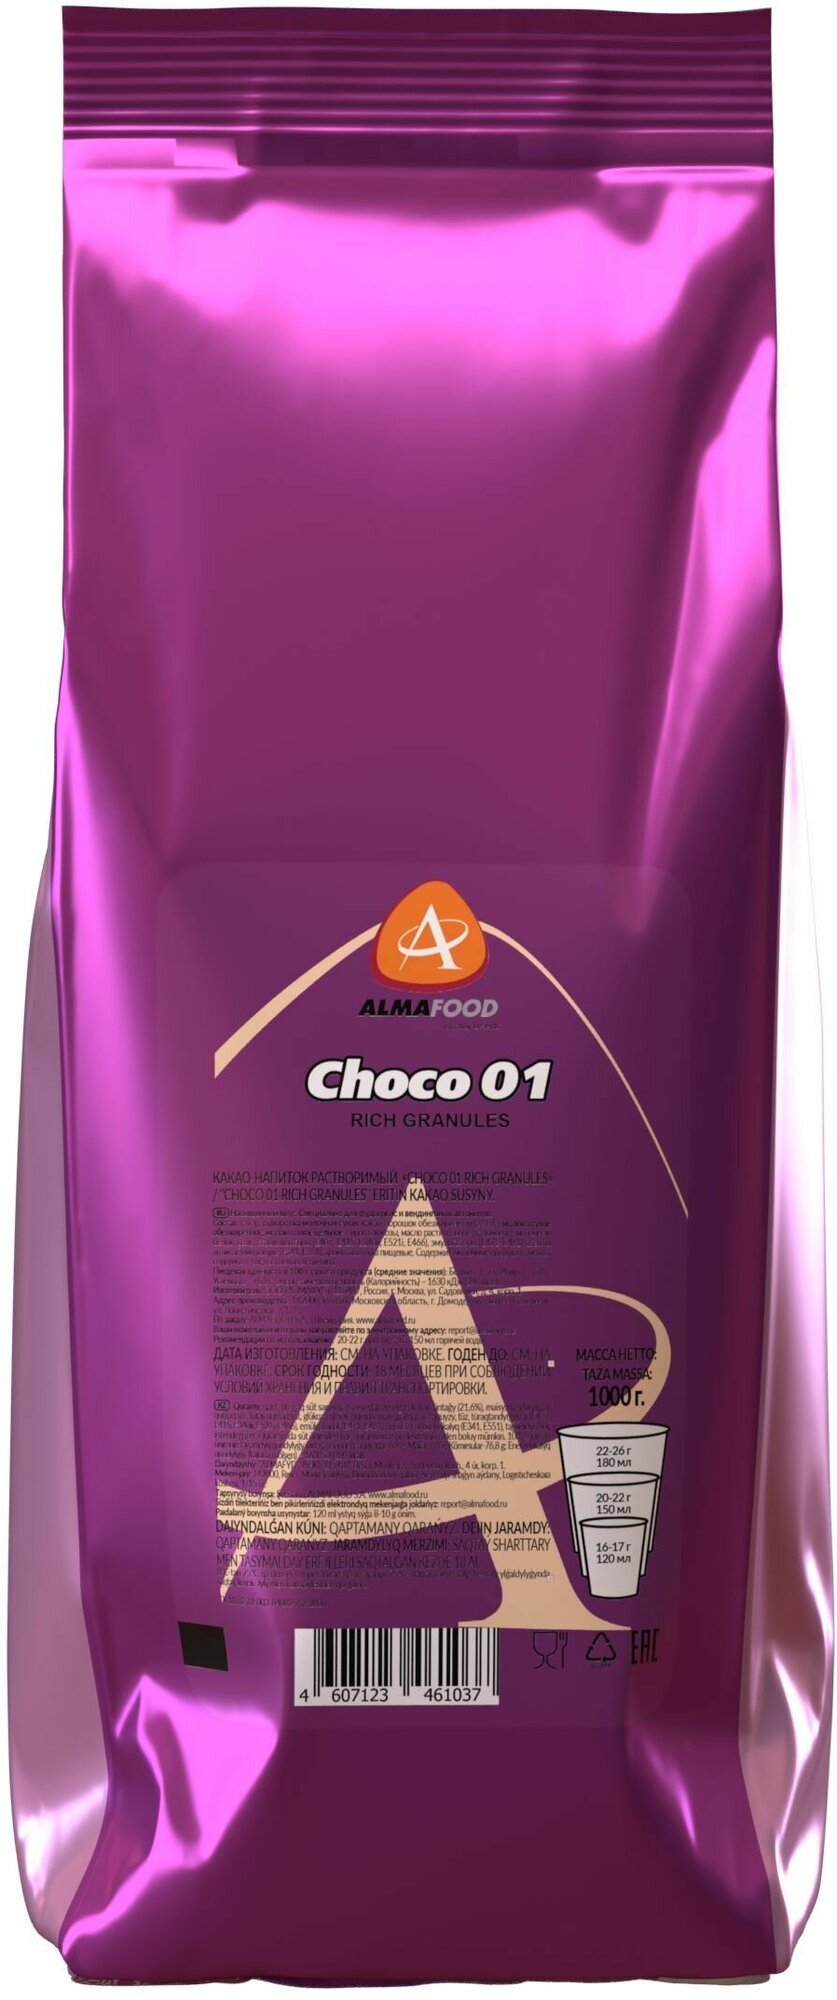 Горячий шоколад Almafood CHOCO 01 RICH GRANULES для вендинга растворимый напиток 1 кг